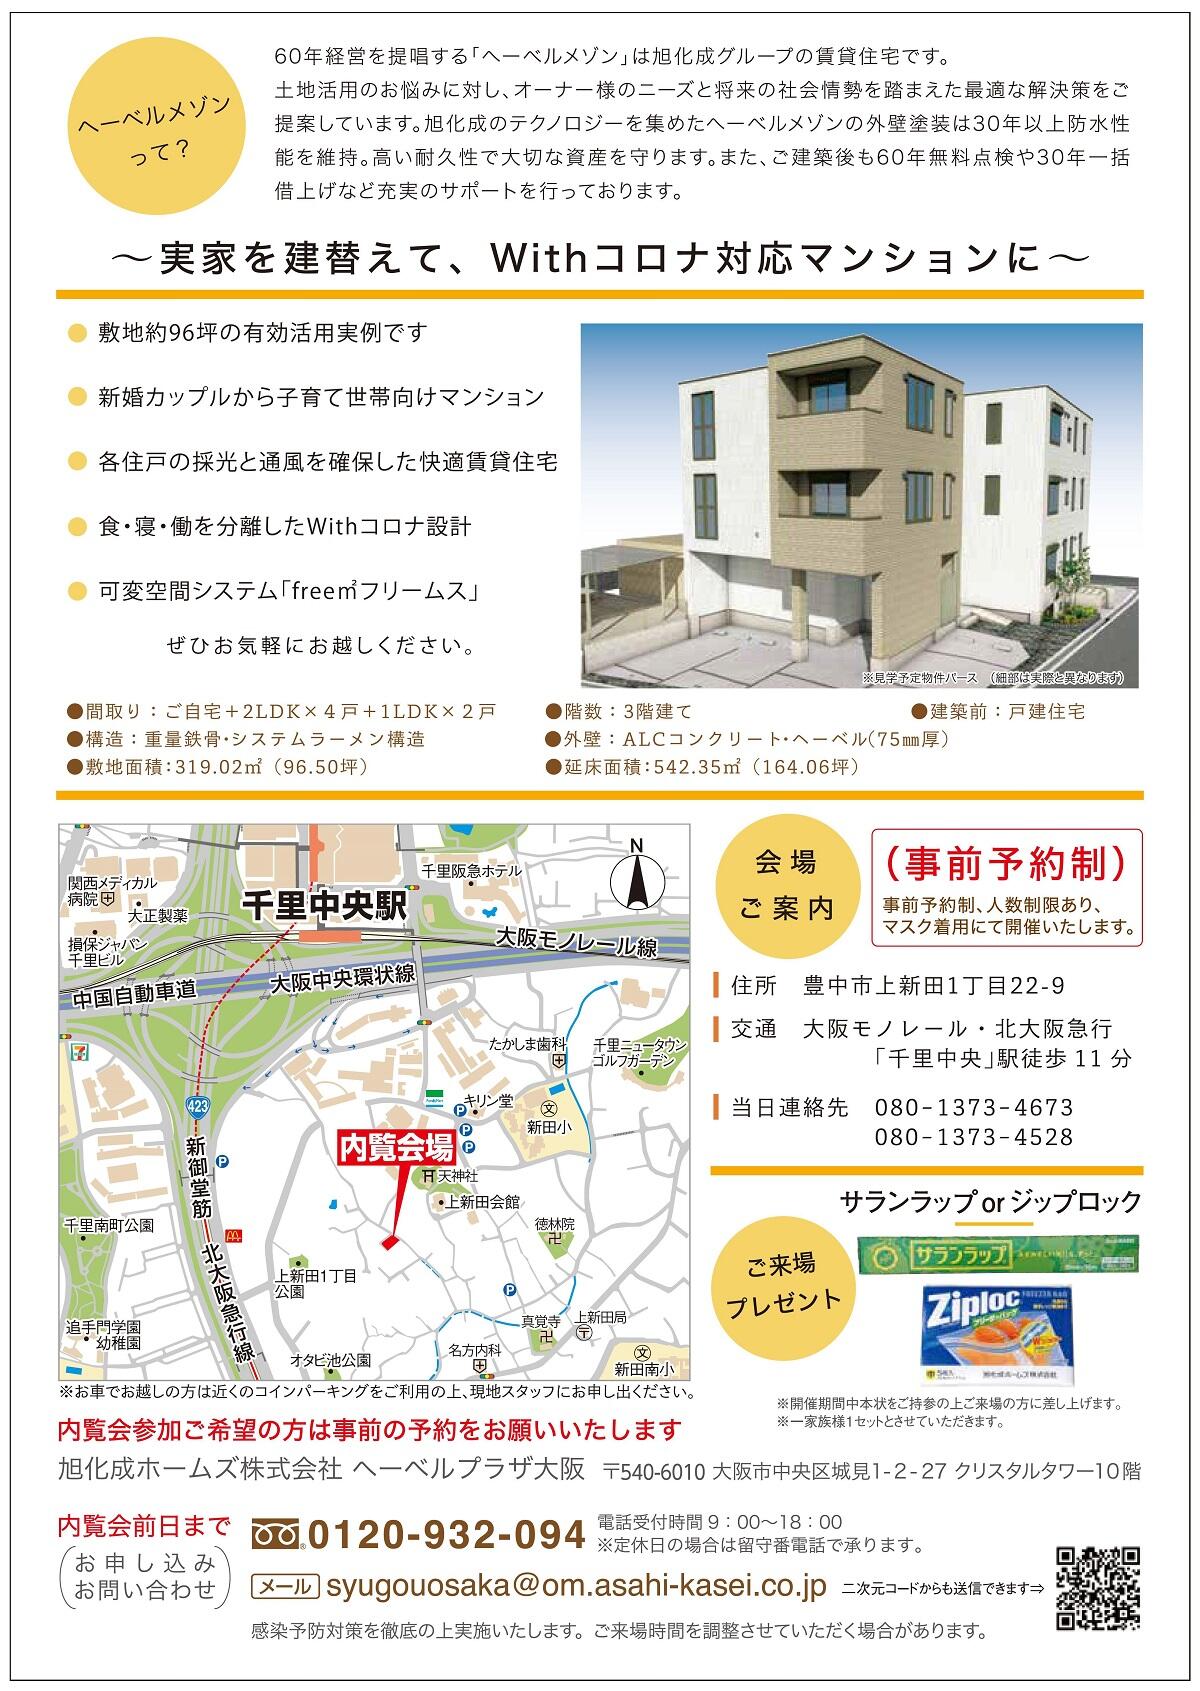 https://www.asahi-kasei.co.jp/maison/hebelplaza/blog/18/osaka/item/2021/20210621-4.jpg